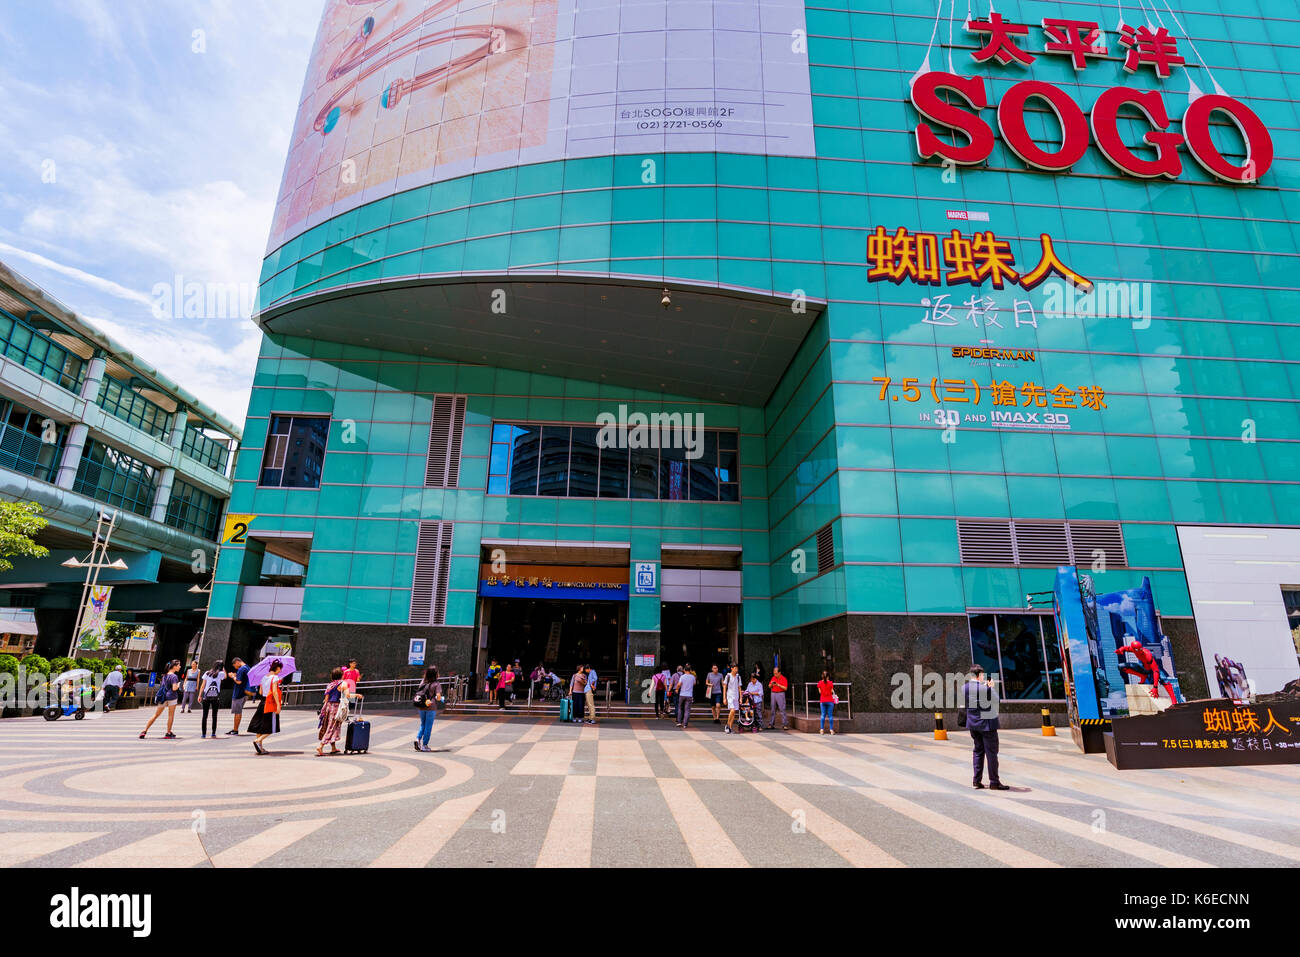 Taipei, Taiwan - le 27 juin : c'est le grand magasin Sogo qui est un endroit populaire pour acheter des articles de luxe dans le centre-ville de Zhongxiao Fuxing salon o Banque D'Images